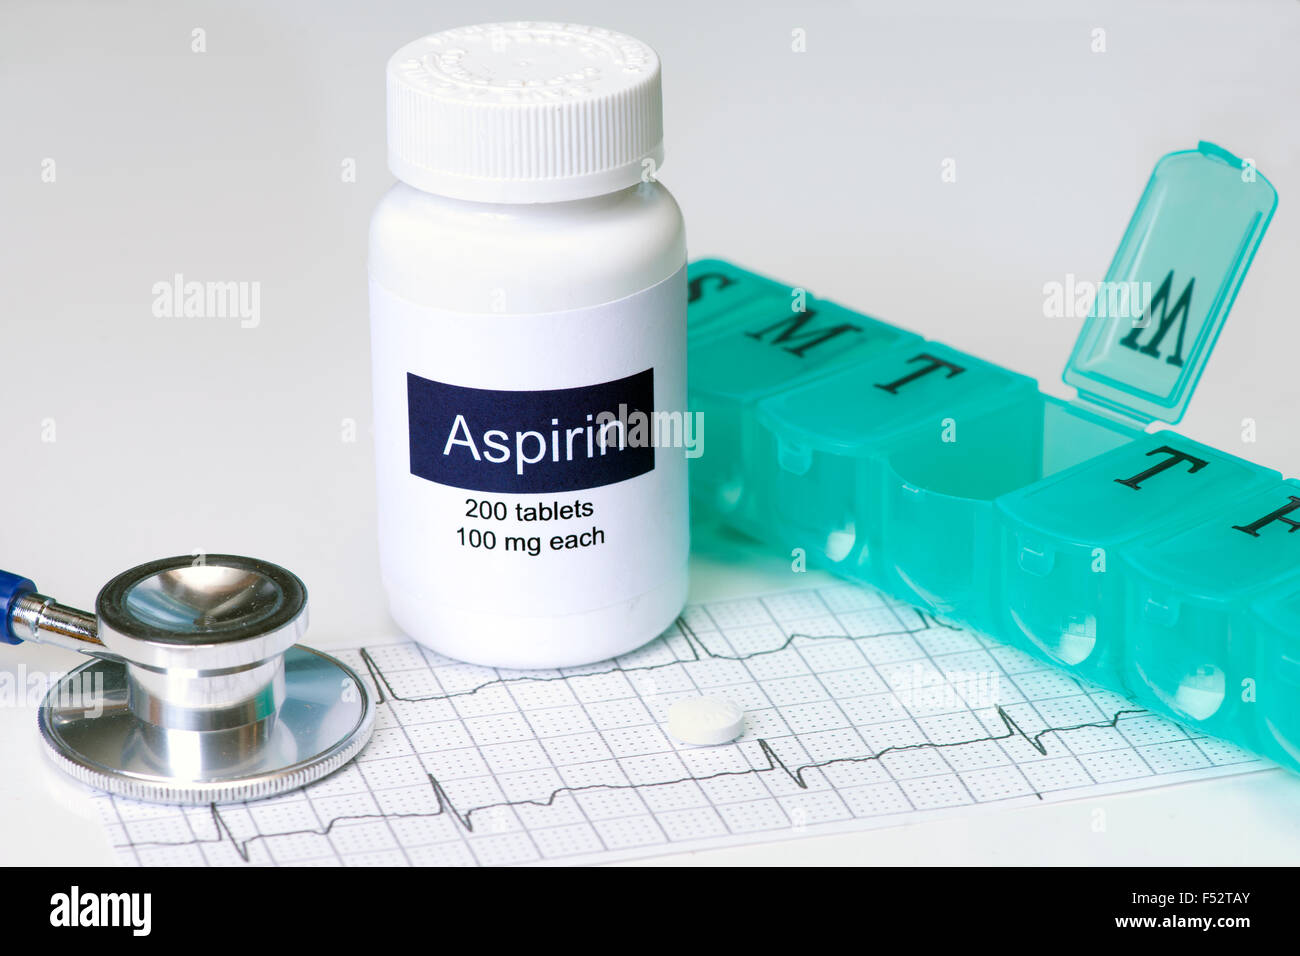 Una aspirina diaria dosis con estetoscopio y dispensador de la píldora. La etiqueta es ficticio, creado por el fotógrafo. Foto de stock